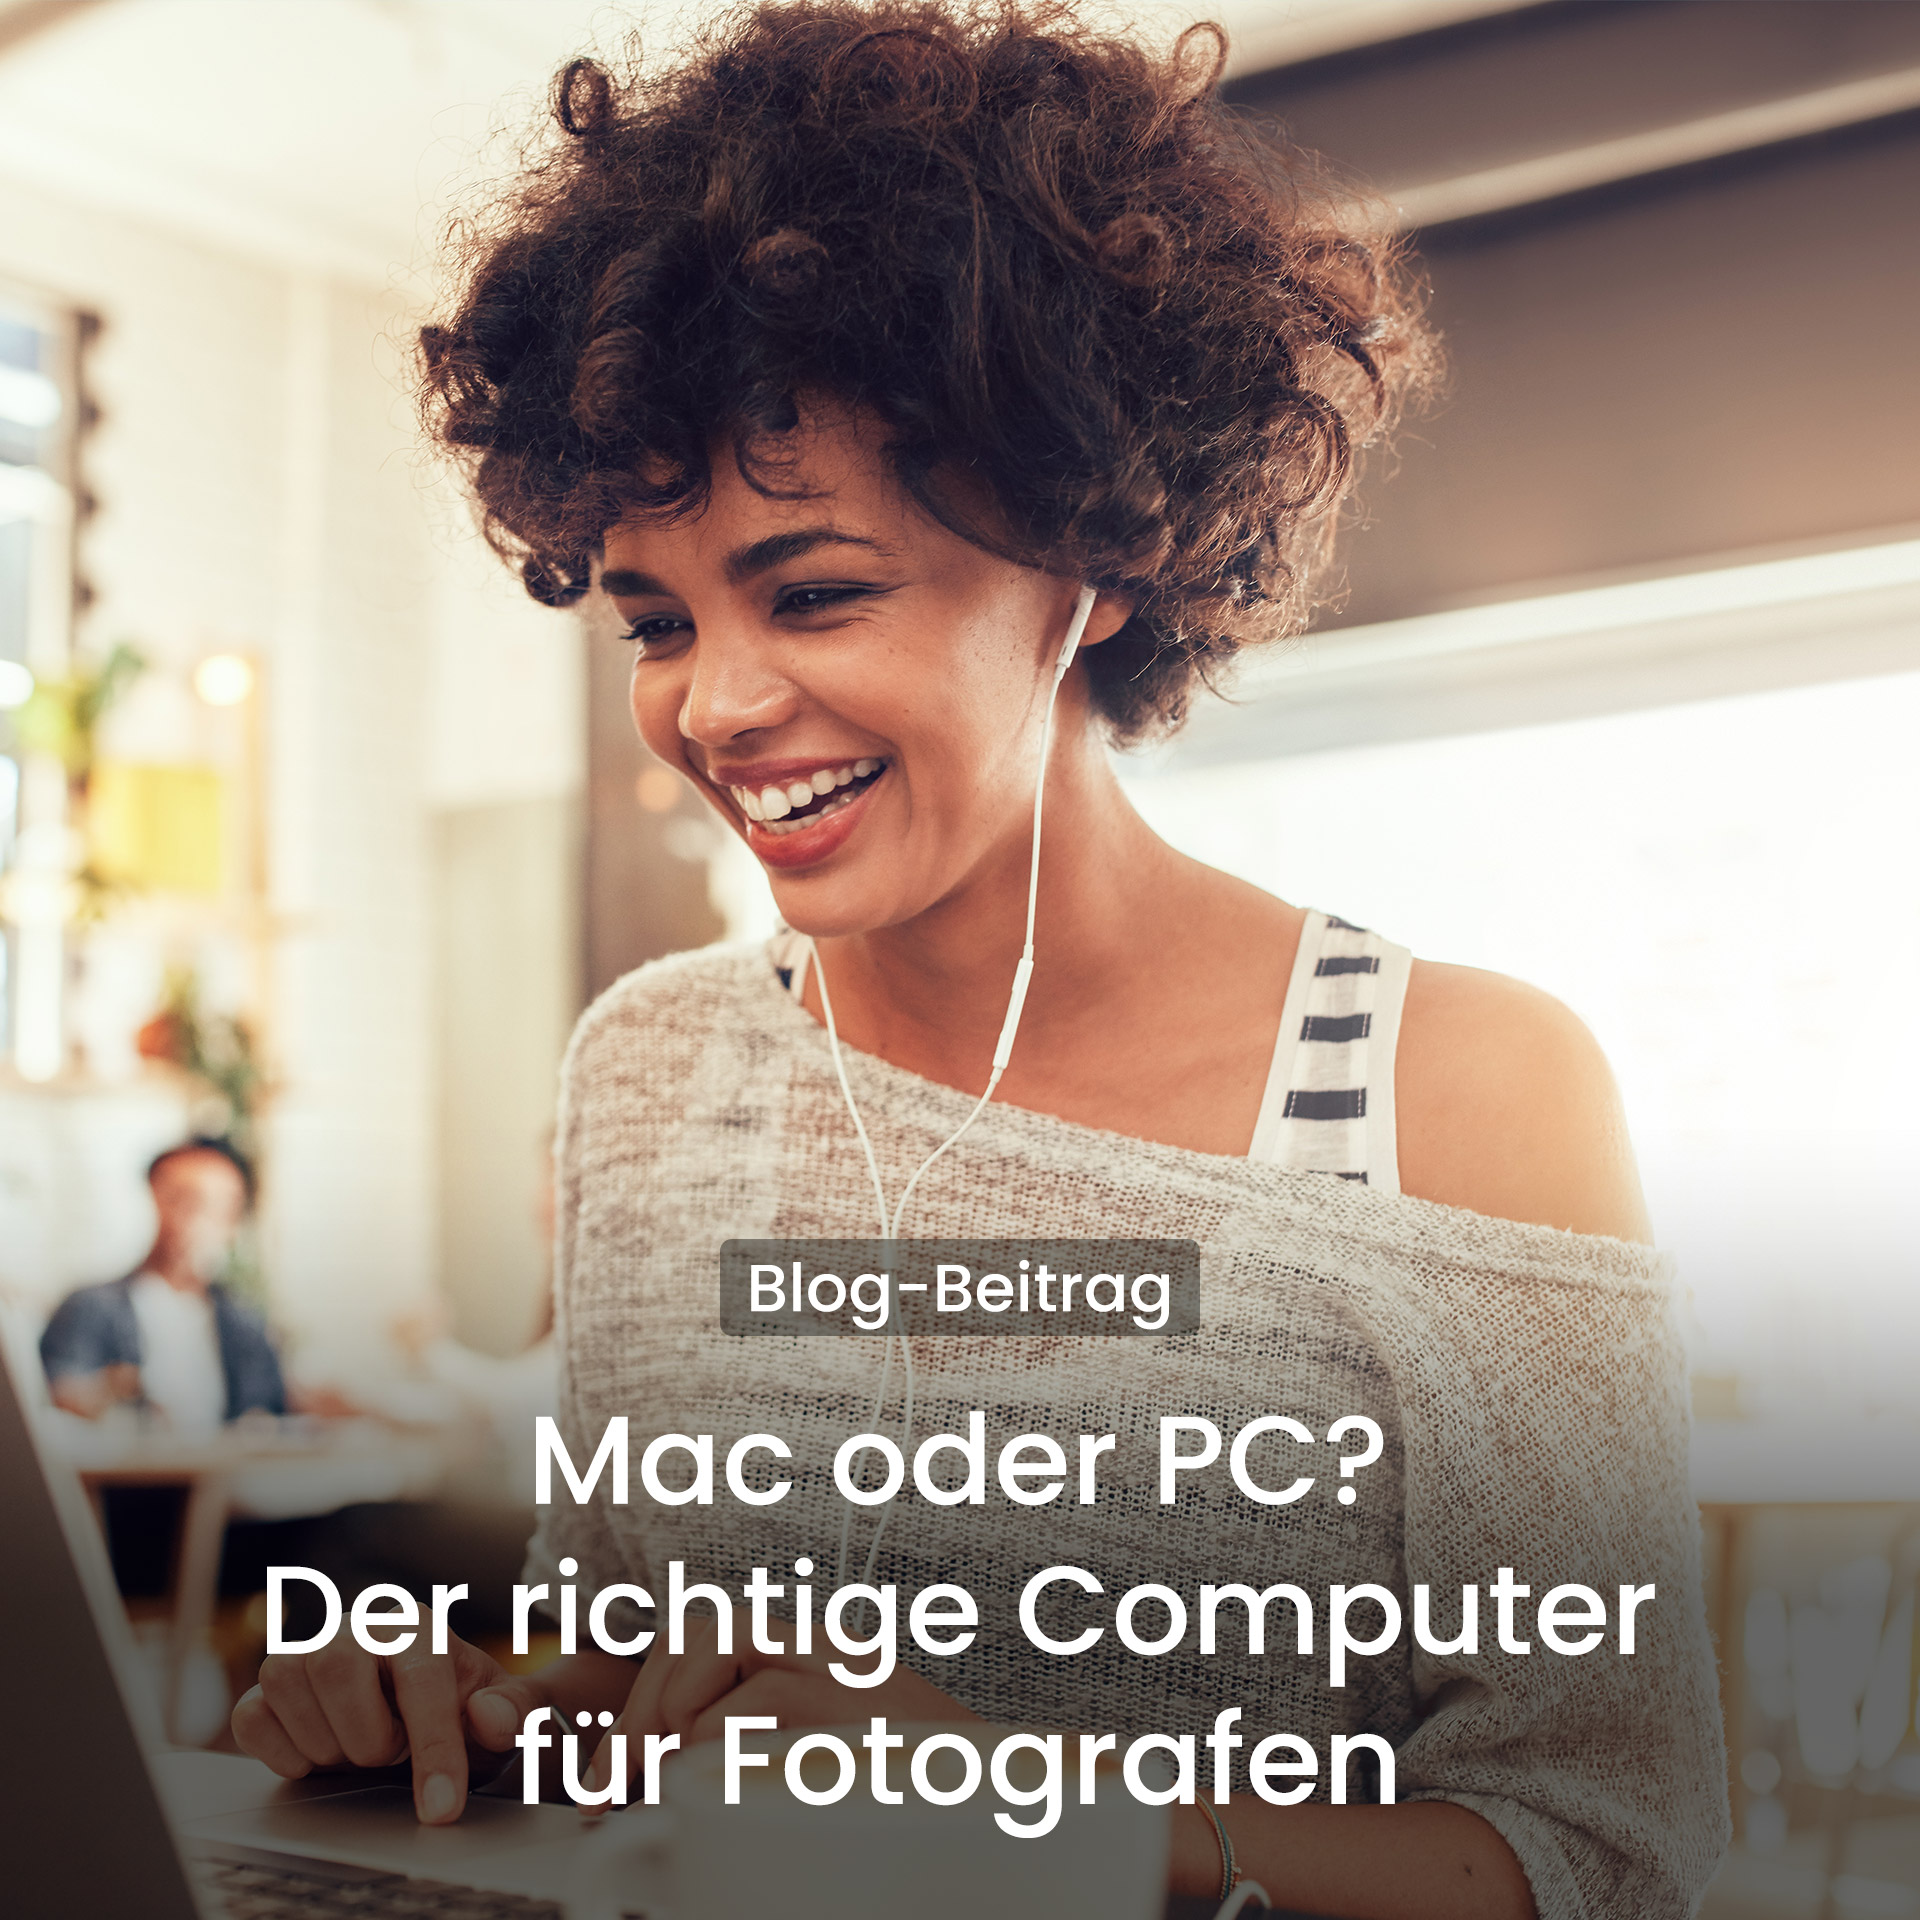 Mac oder PC? Der richtige Computer für Fotografen